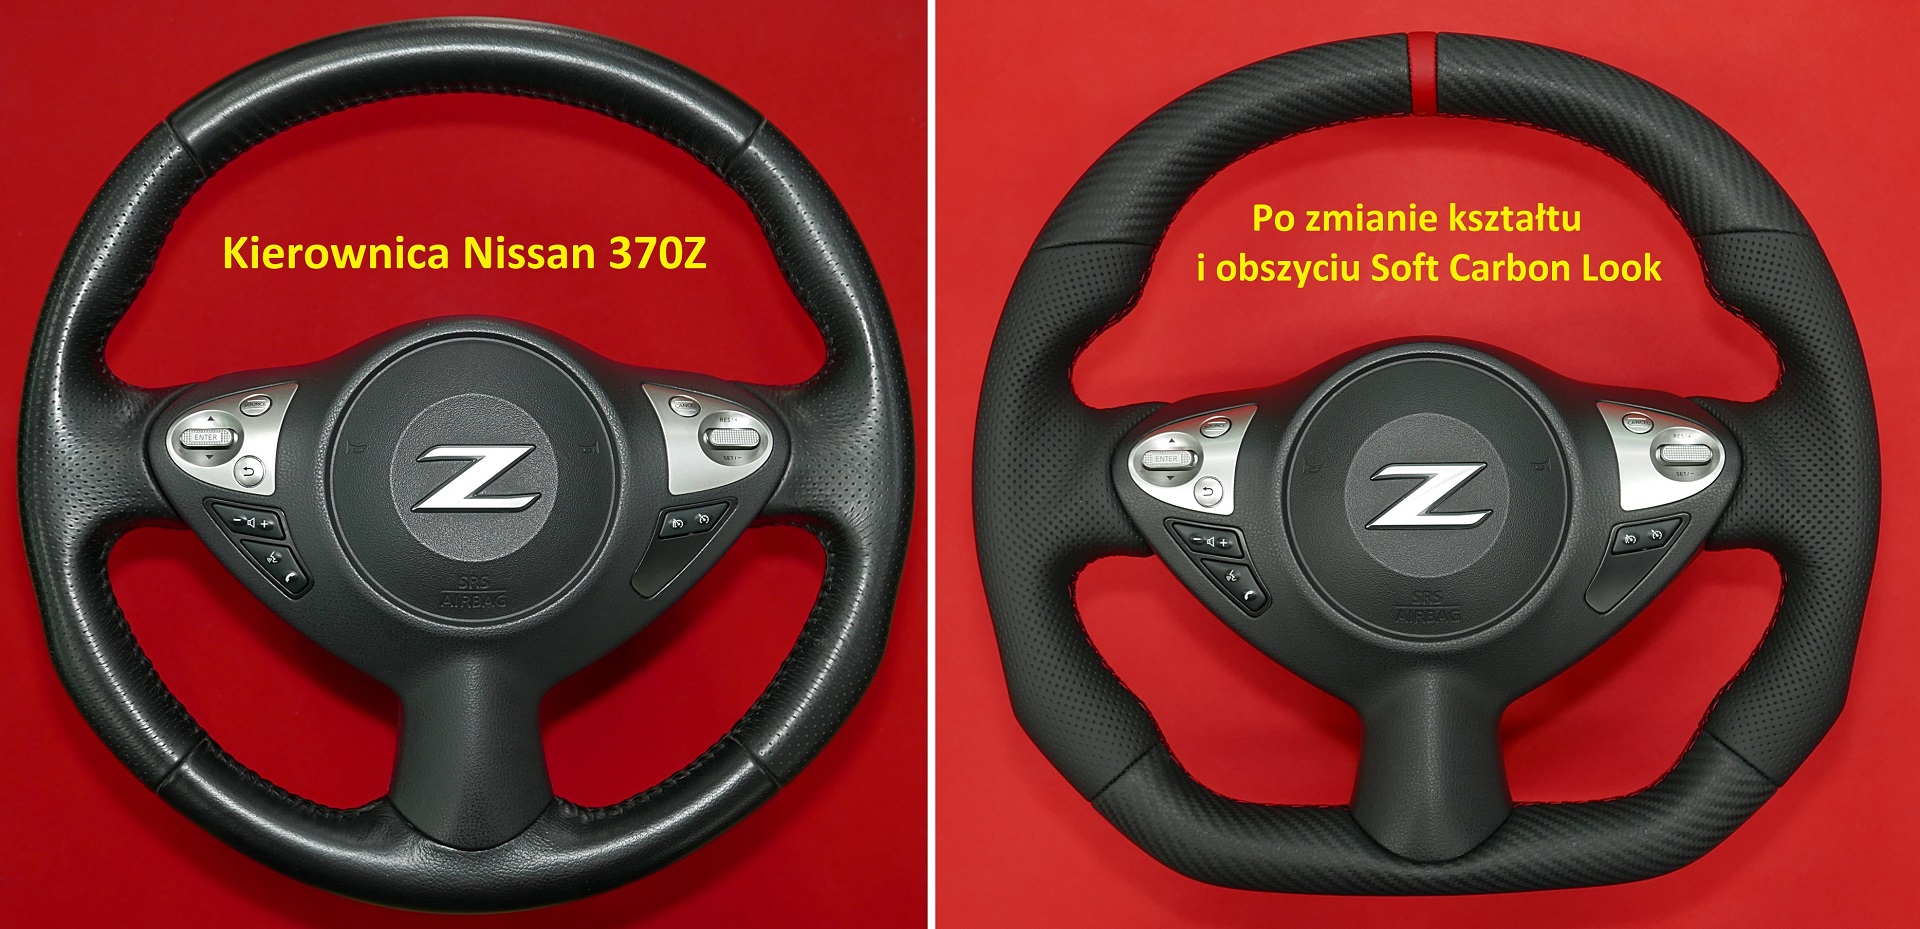 Tuning modyfikacja zmiana kształtu kierownica Nissan 370Z carbon włókno węglowe